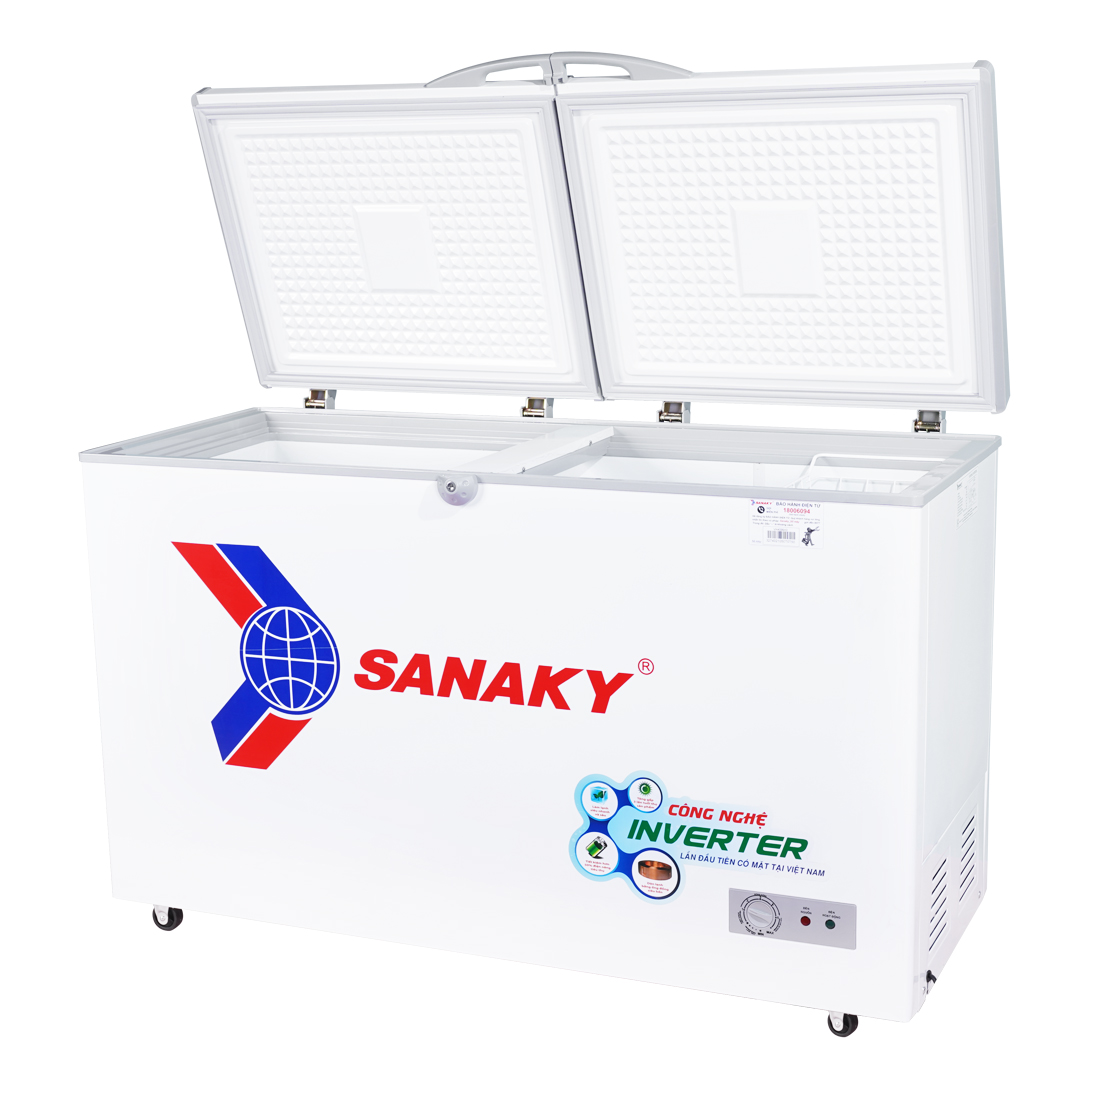 Tủ Đông Sanaky VH-3699A3